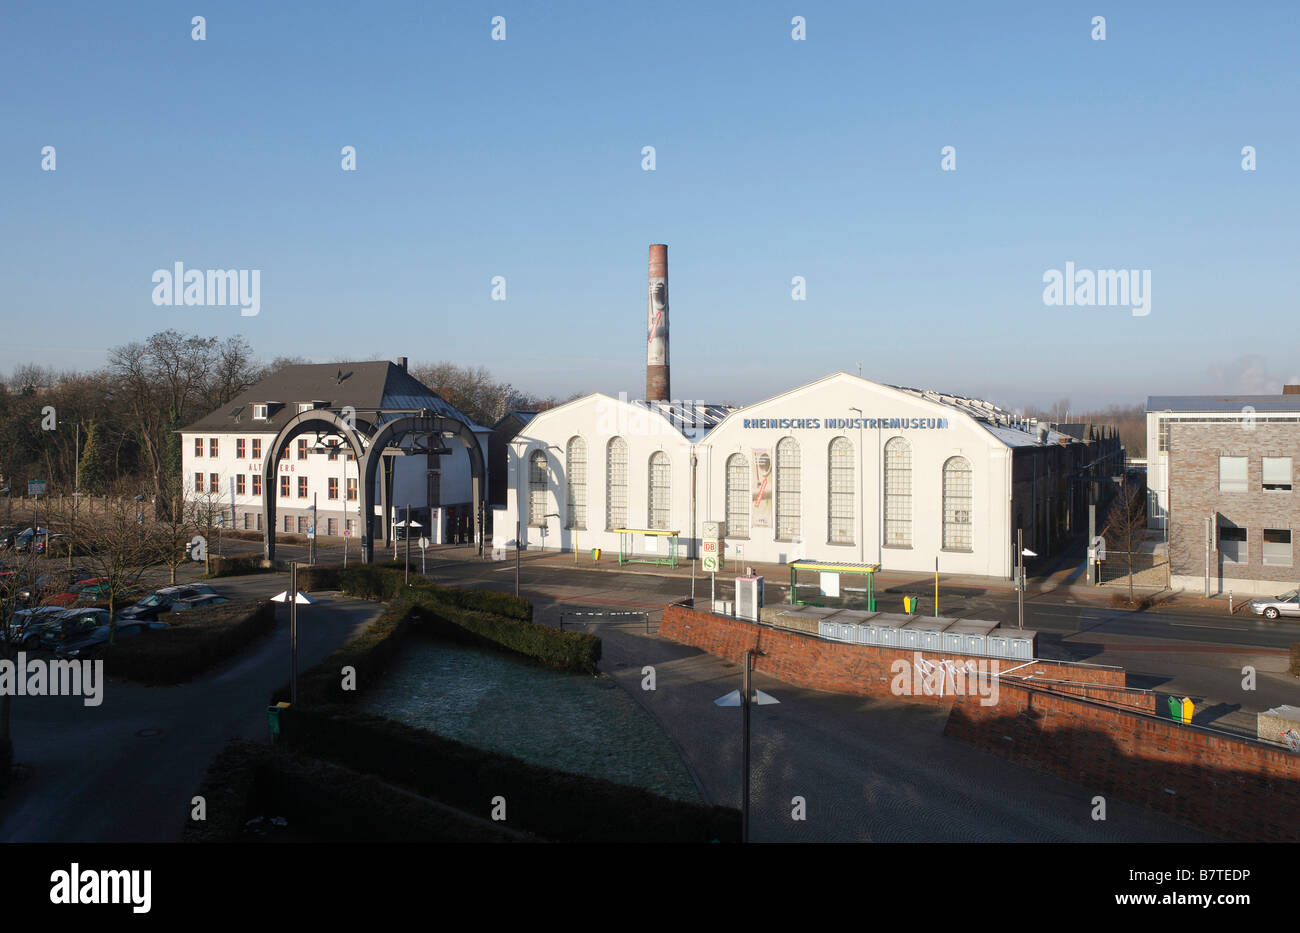 Oberhausen, Zinkfabrik Altenberg, LVR-Industriemuseum, Museum der Schwerindustrie, Straßenseite, Eingangsbereich Foto Stock